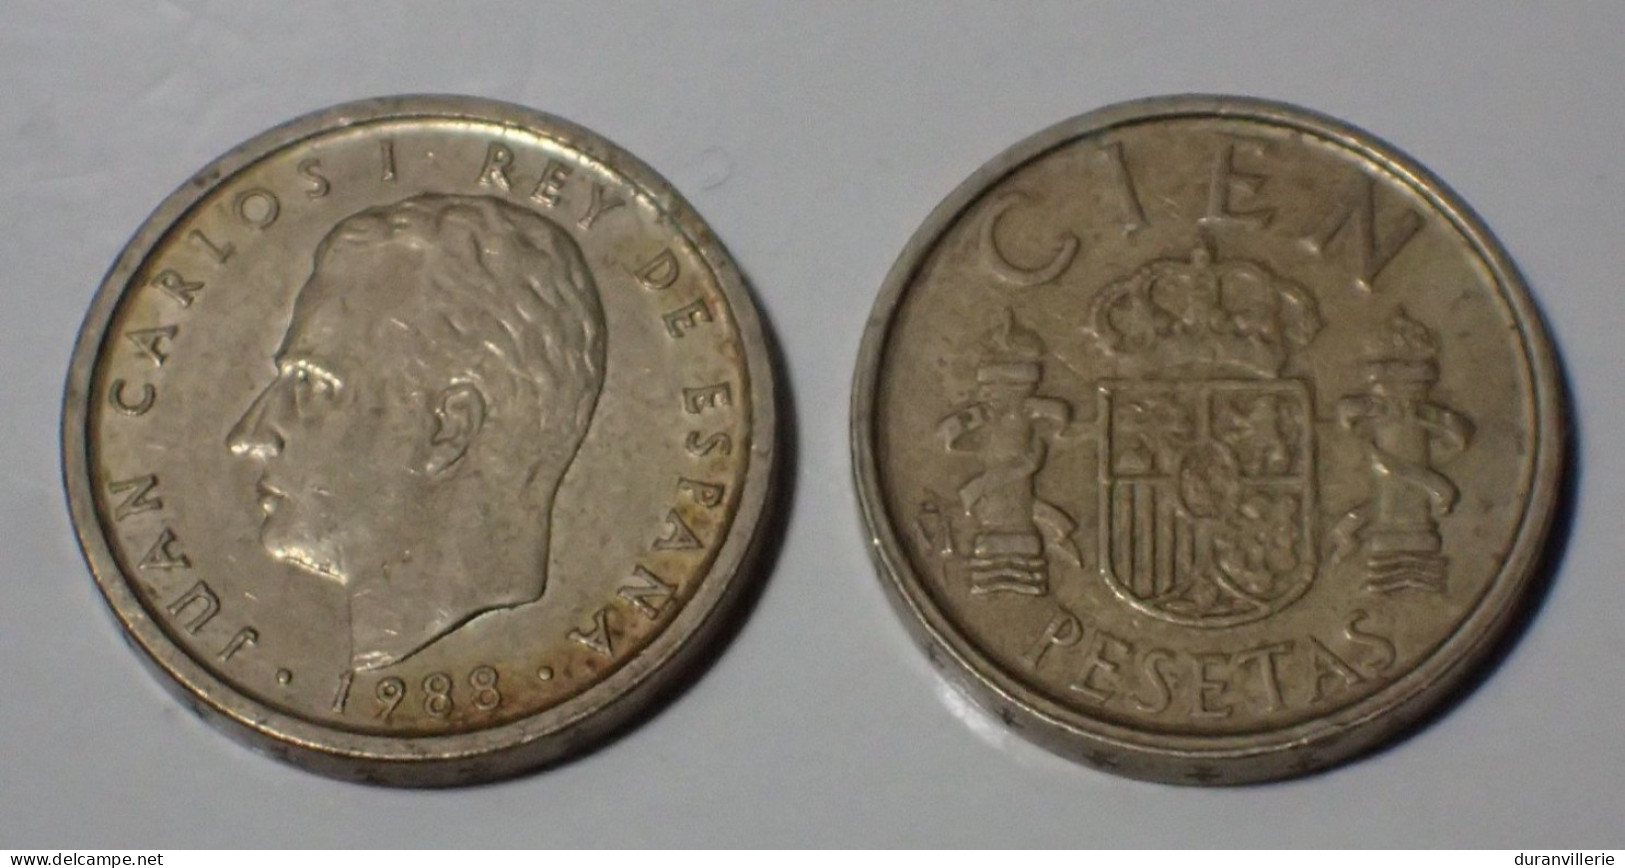 Spagna - Spain - Espana - Spanien 1988 - 100 Pesetas, KM 826 - 100 Pesetas